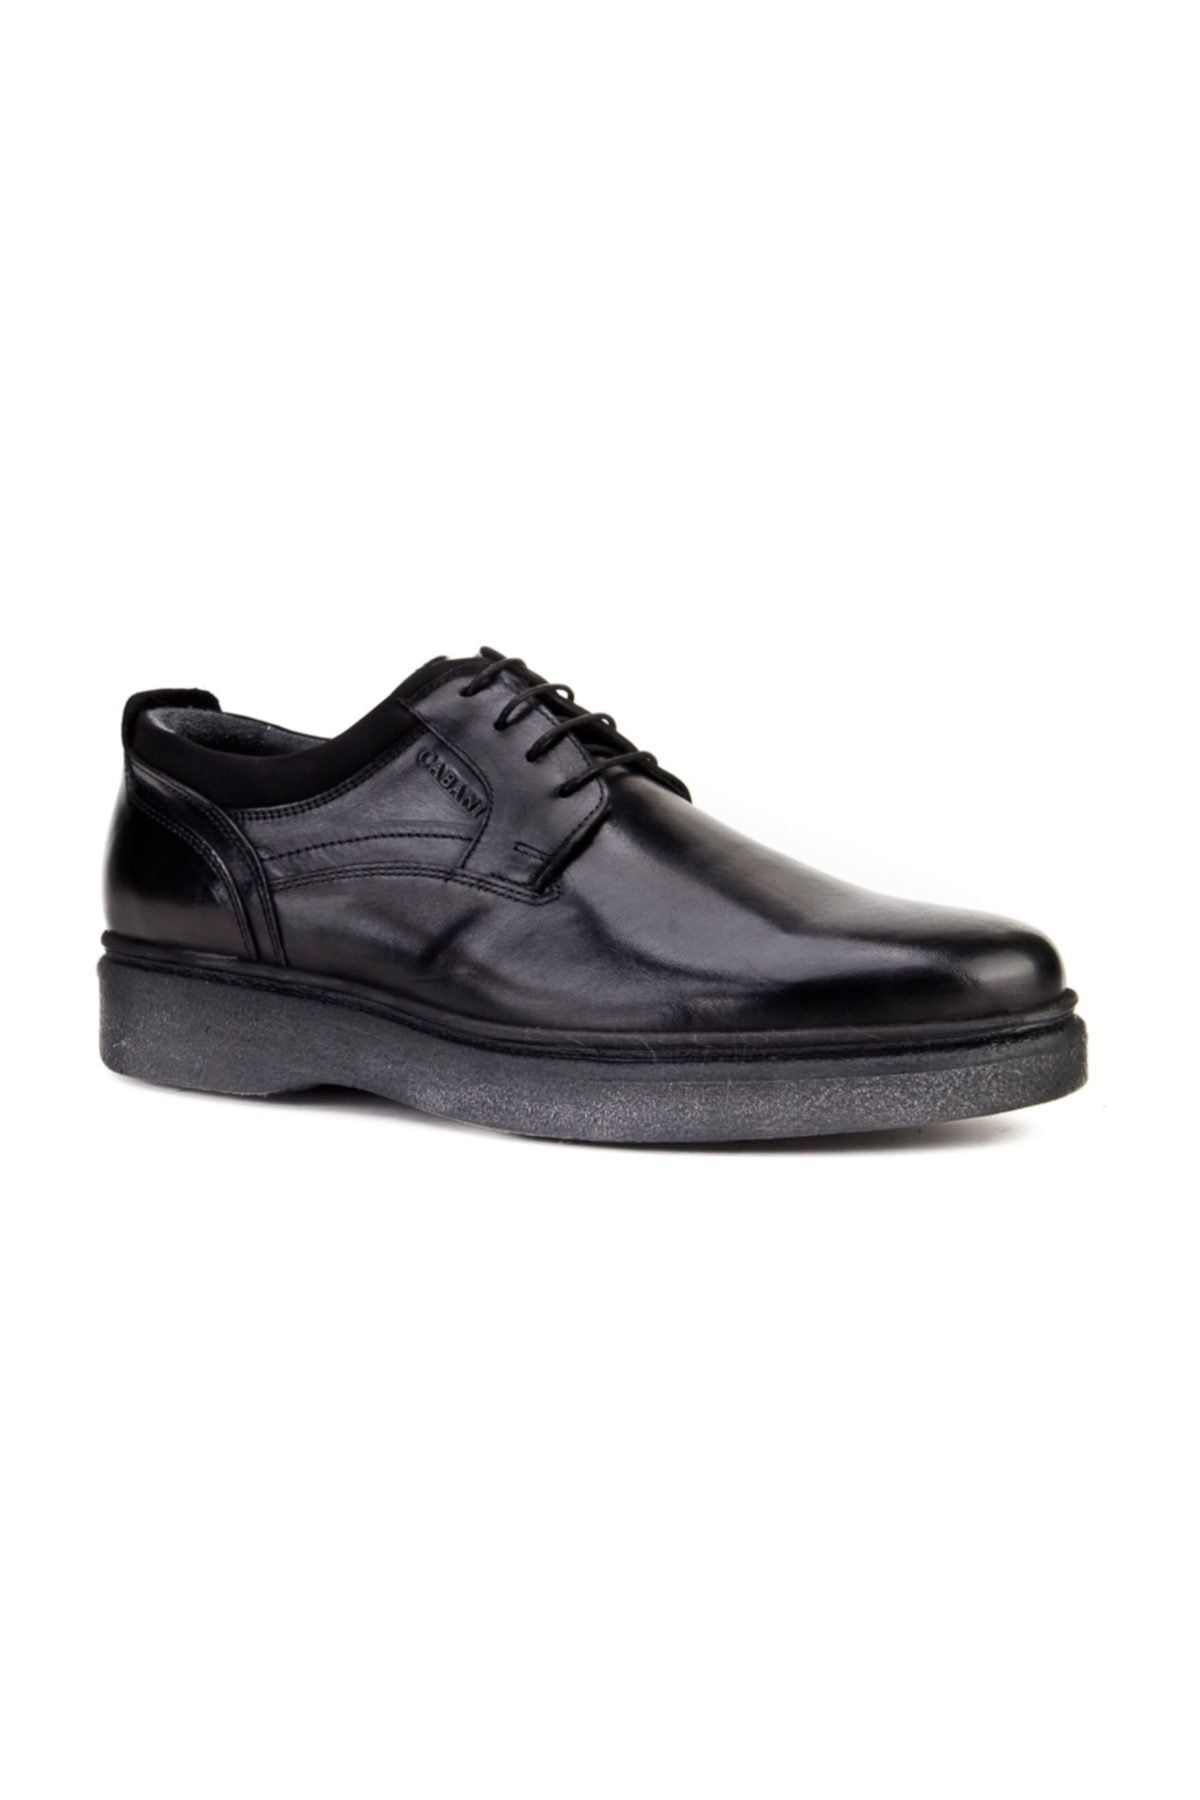 Cabani Bağcıklı Klasik Erkek Ayakkabı Siyah Analin Deri